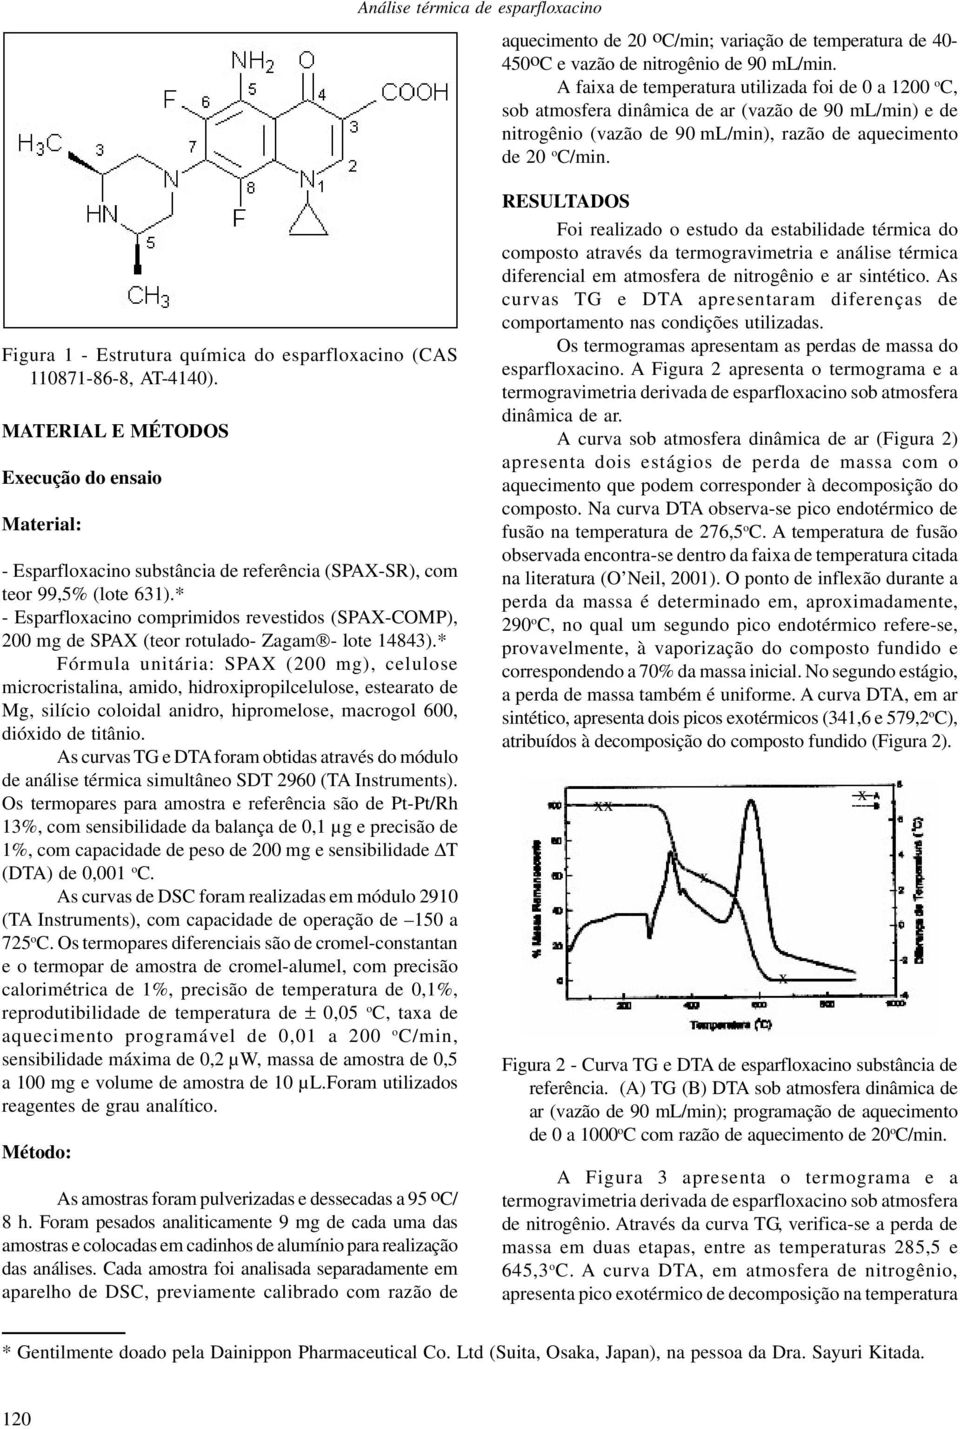 Figura 1 - Estrutura química do esparfloacino (CAS 110871-86-8, AT-4140). MATERIAL E MÉTODOS Eecução do ensaio Material: - Esparfloacino substância de referência (SPAX-SR), com teor 99,5% (lote 631).